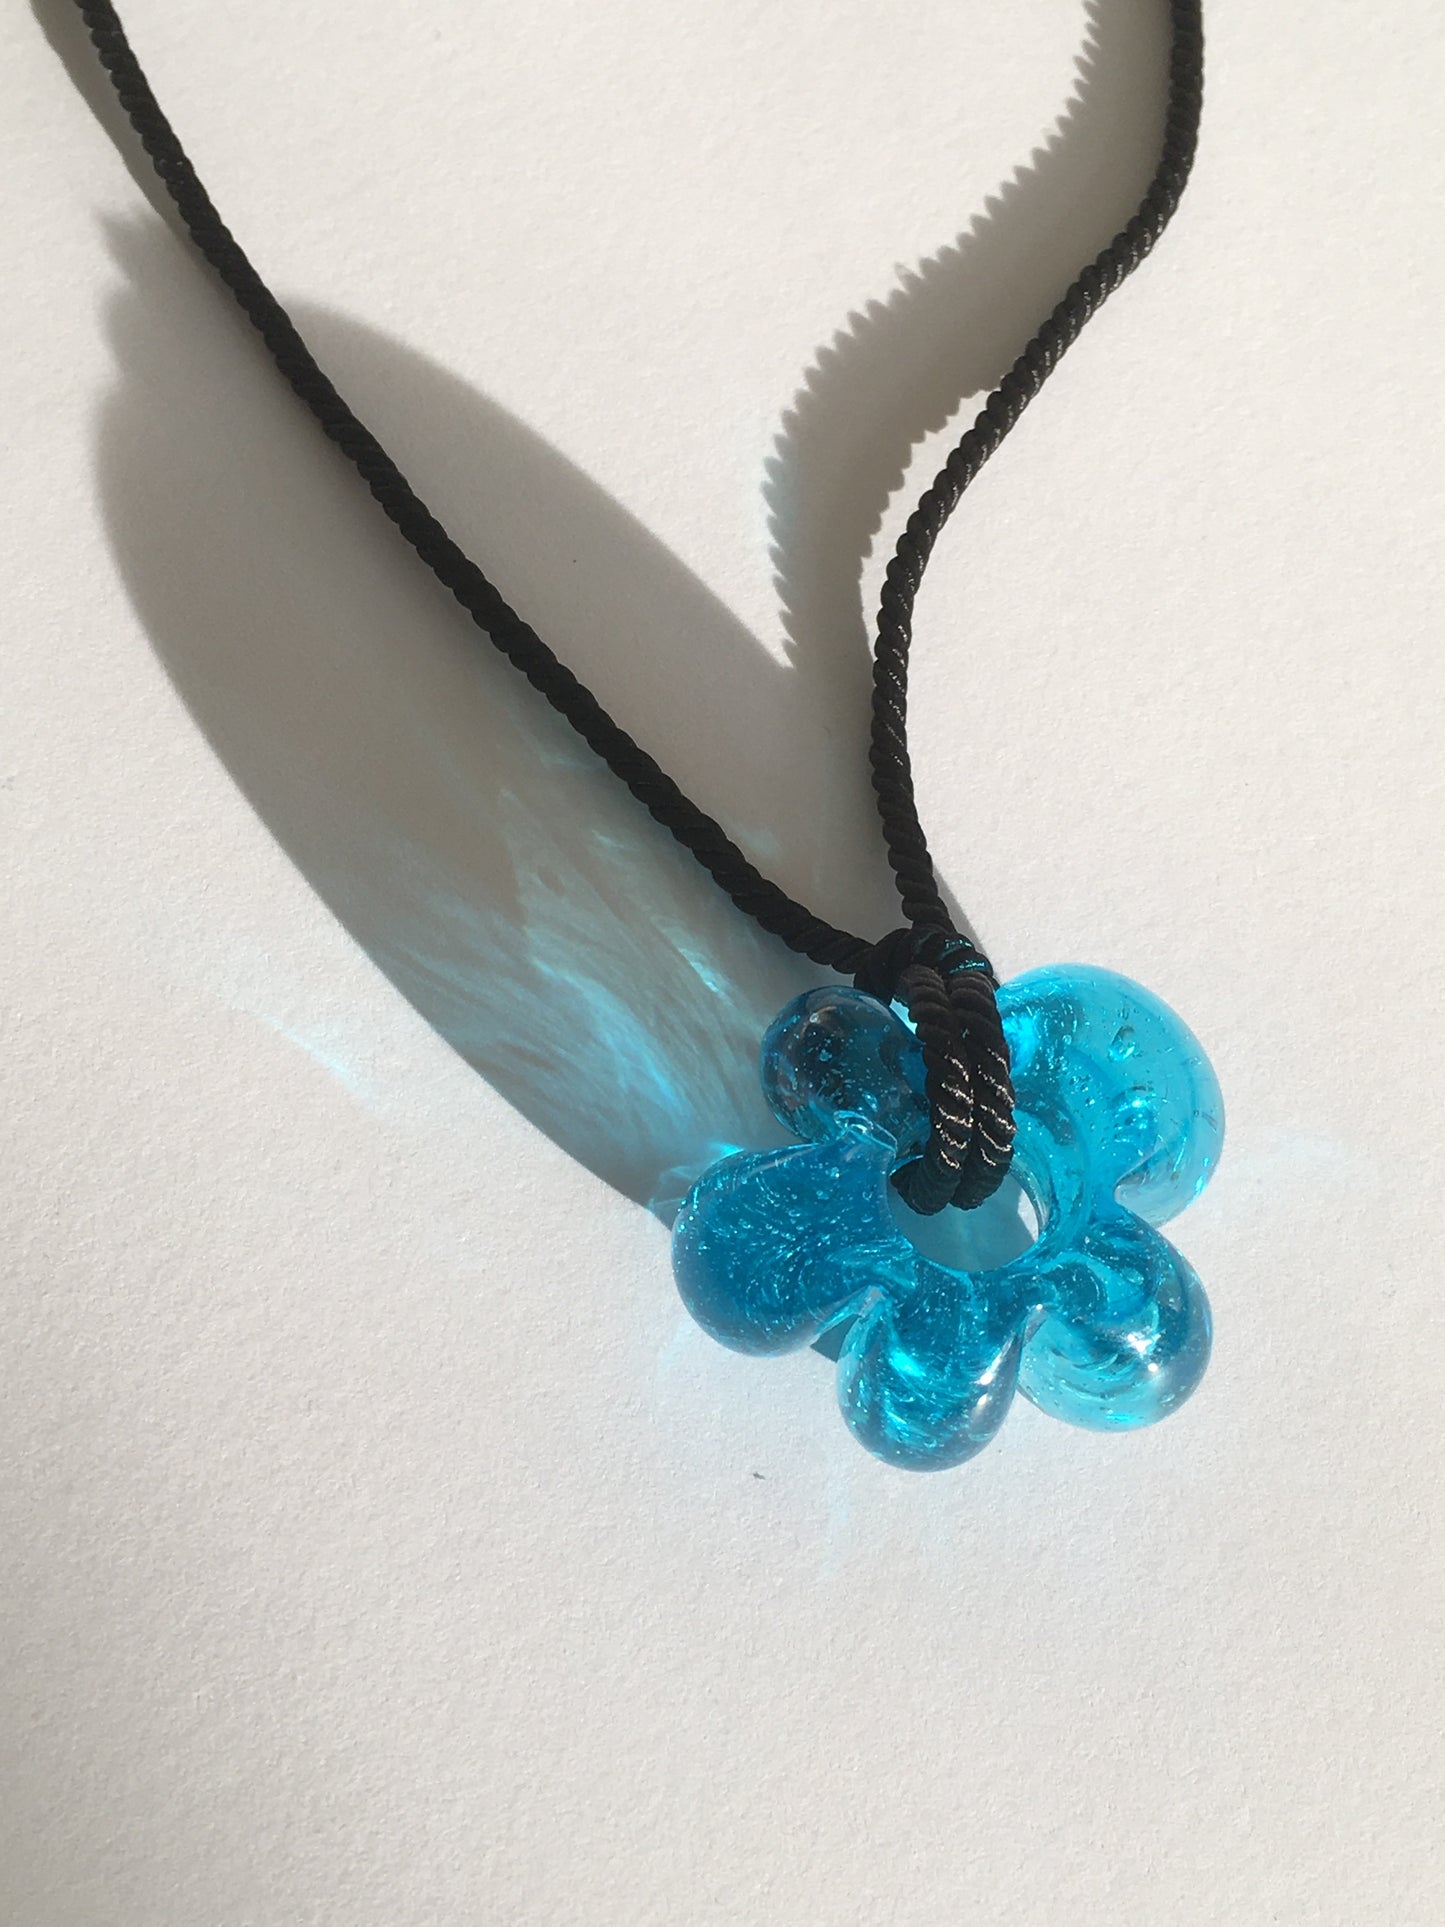 Fleur necklace Turquoise / Black cord